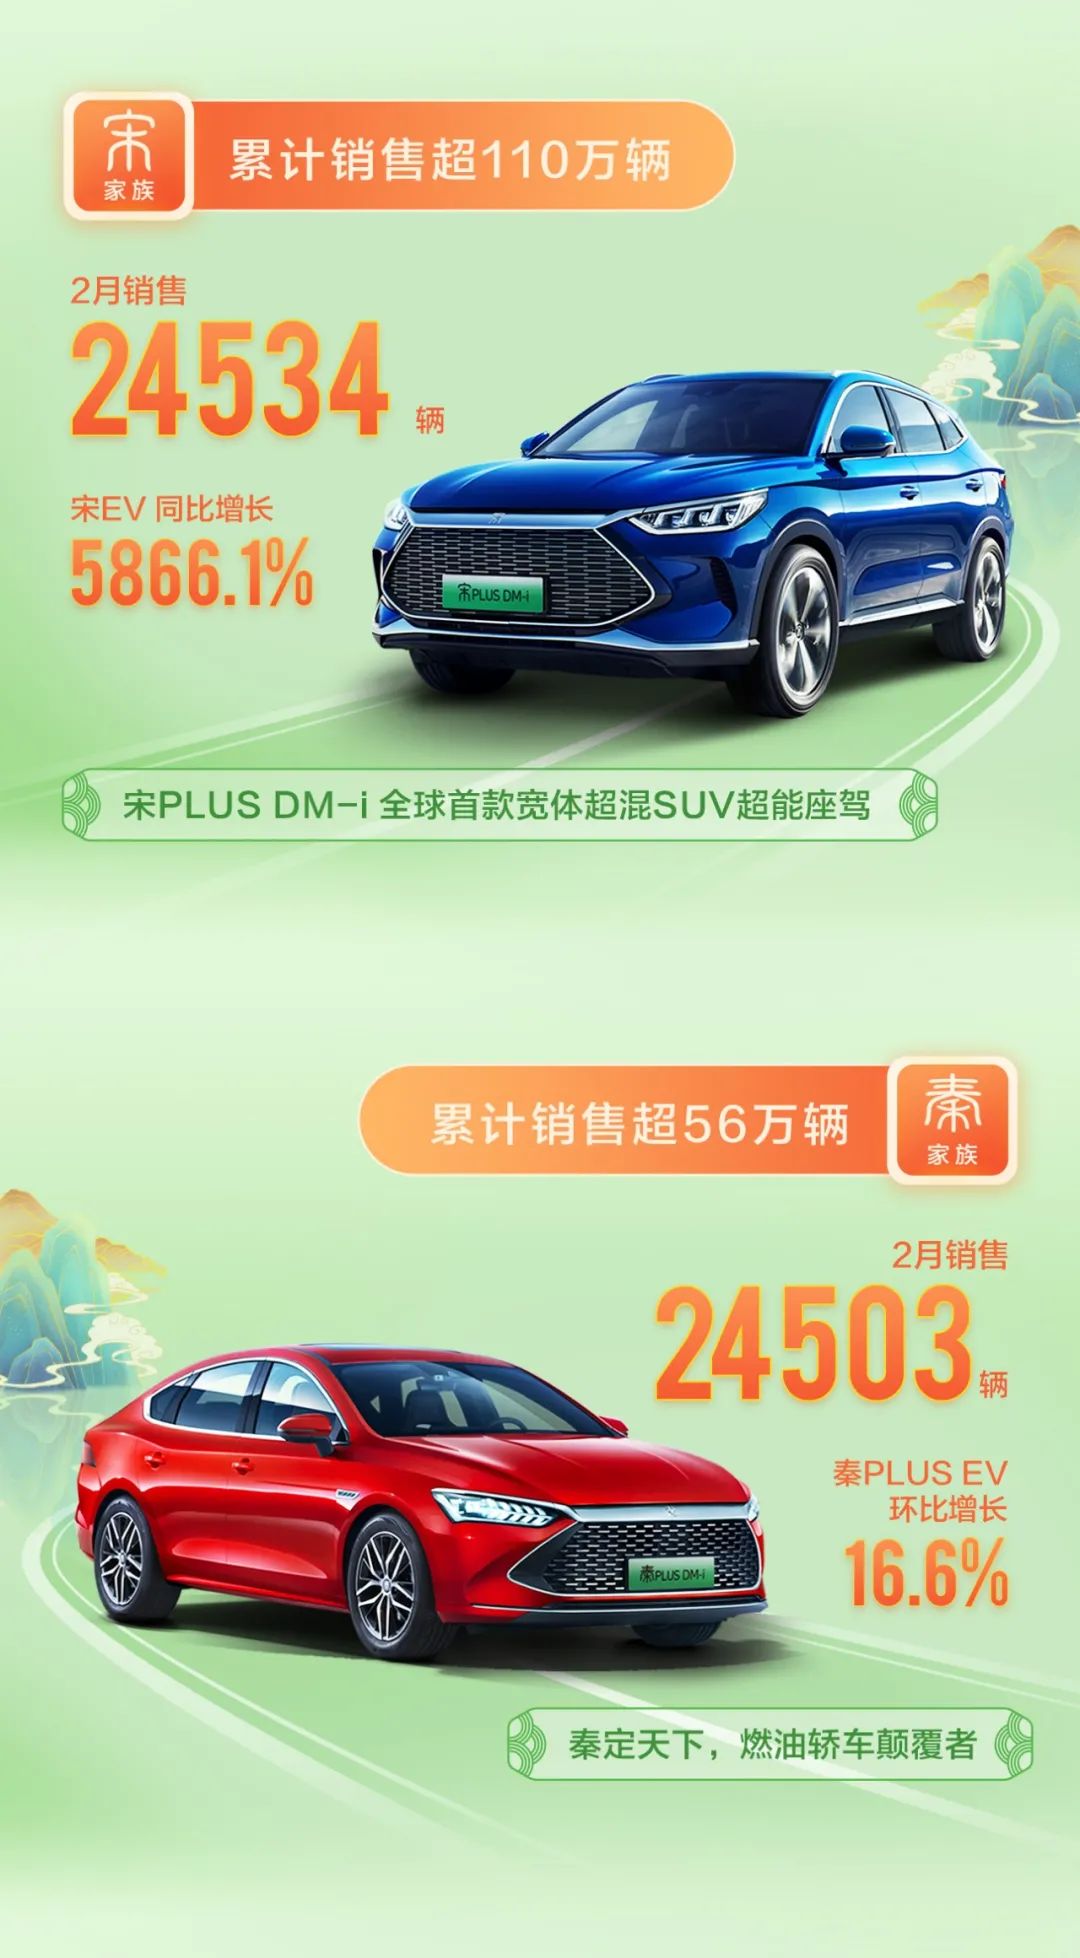 销量足以说明实力-比亚迪新能源车_搜狐汽车_搜狐网